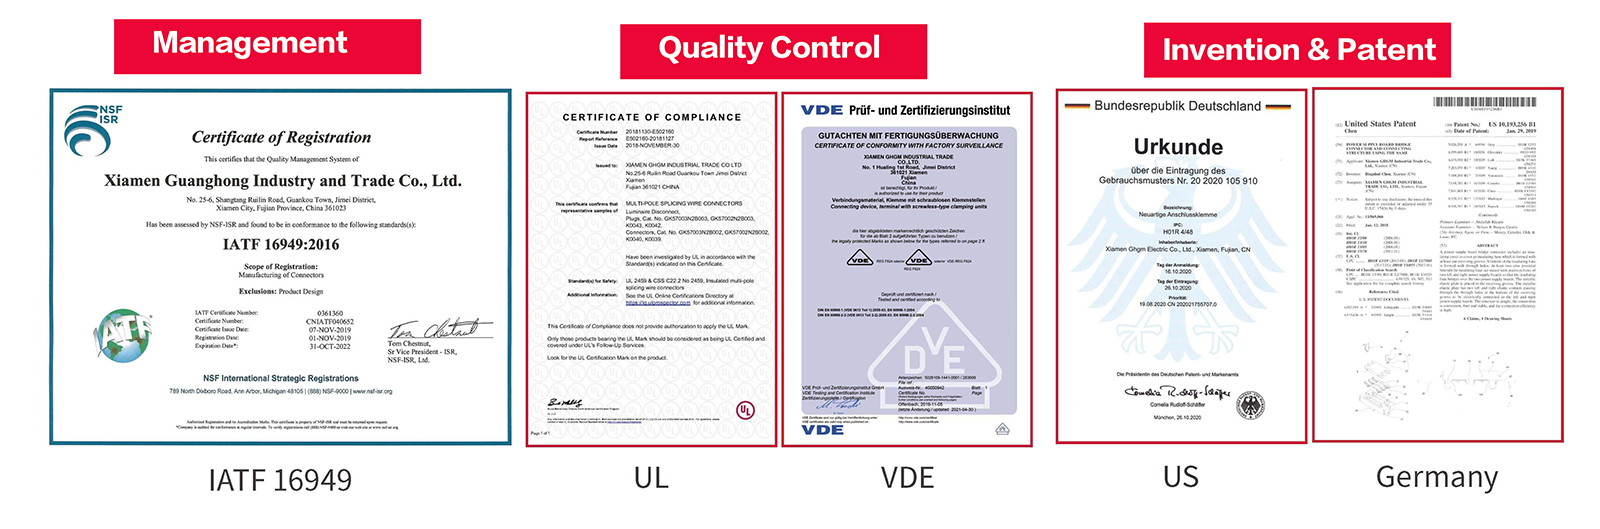 Certificat GHGM, contrôle qualité, invention et brevets.jpg